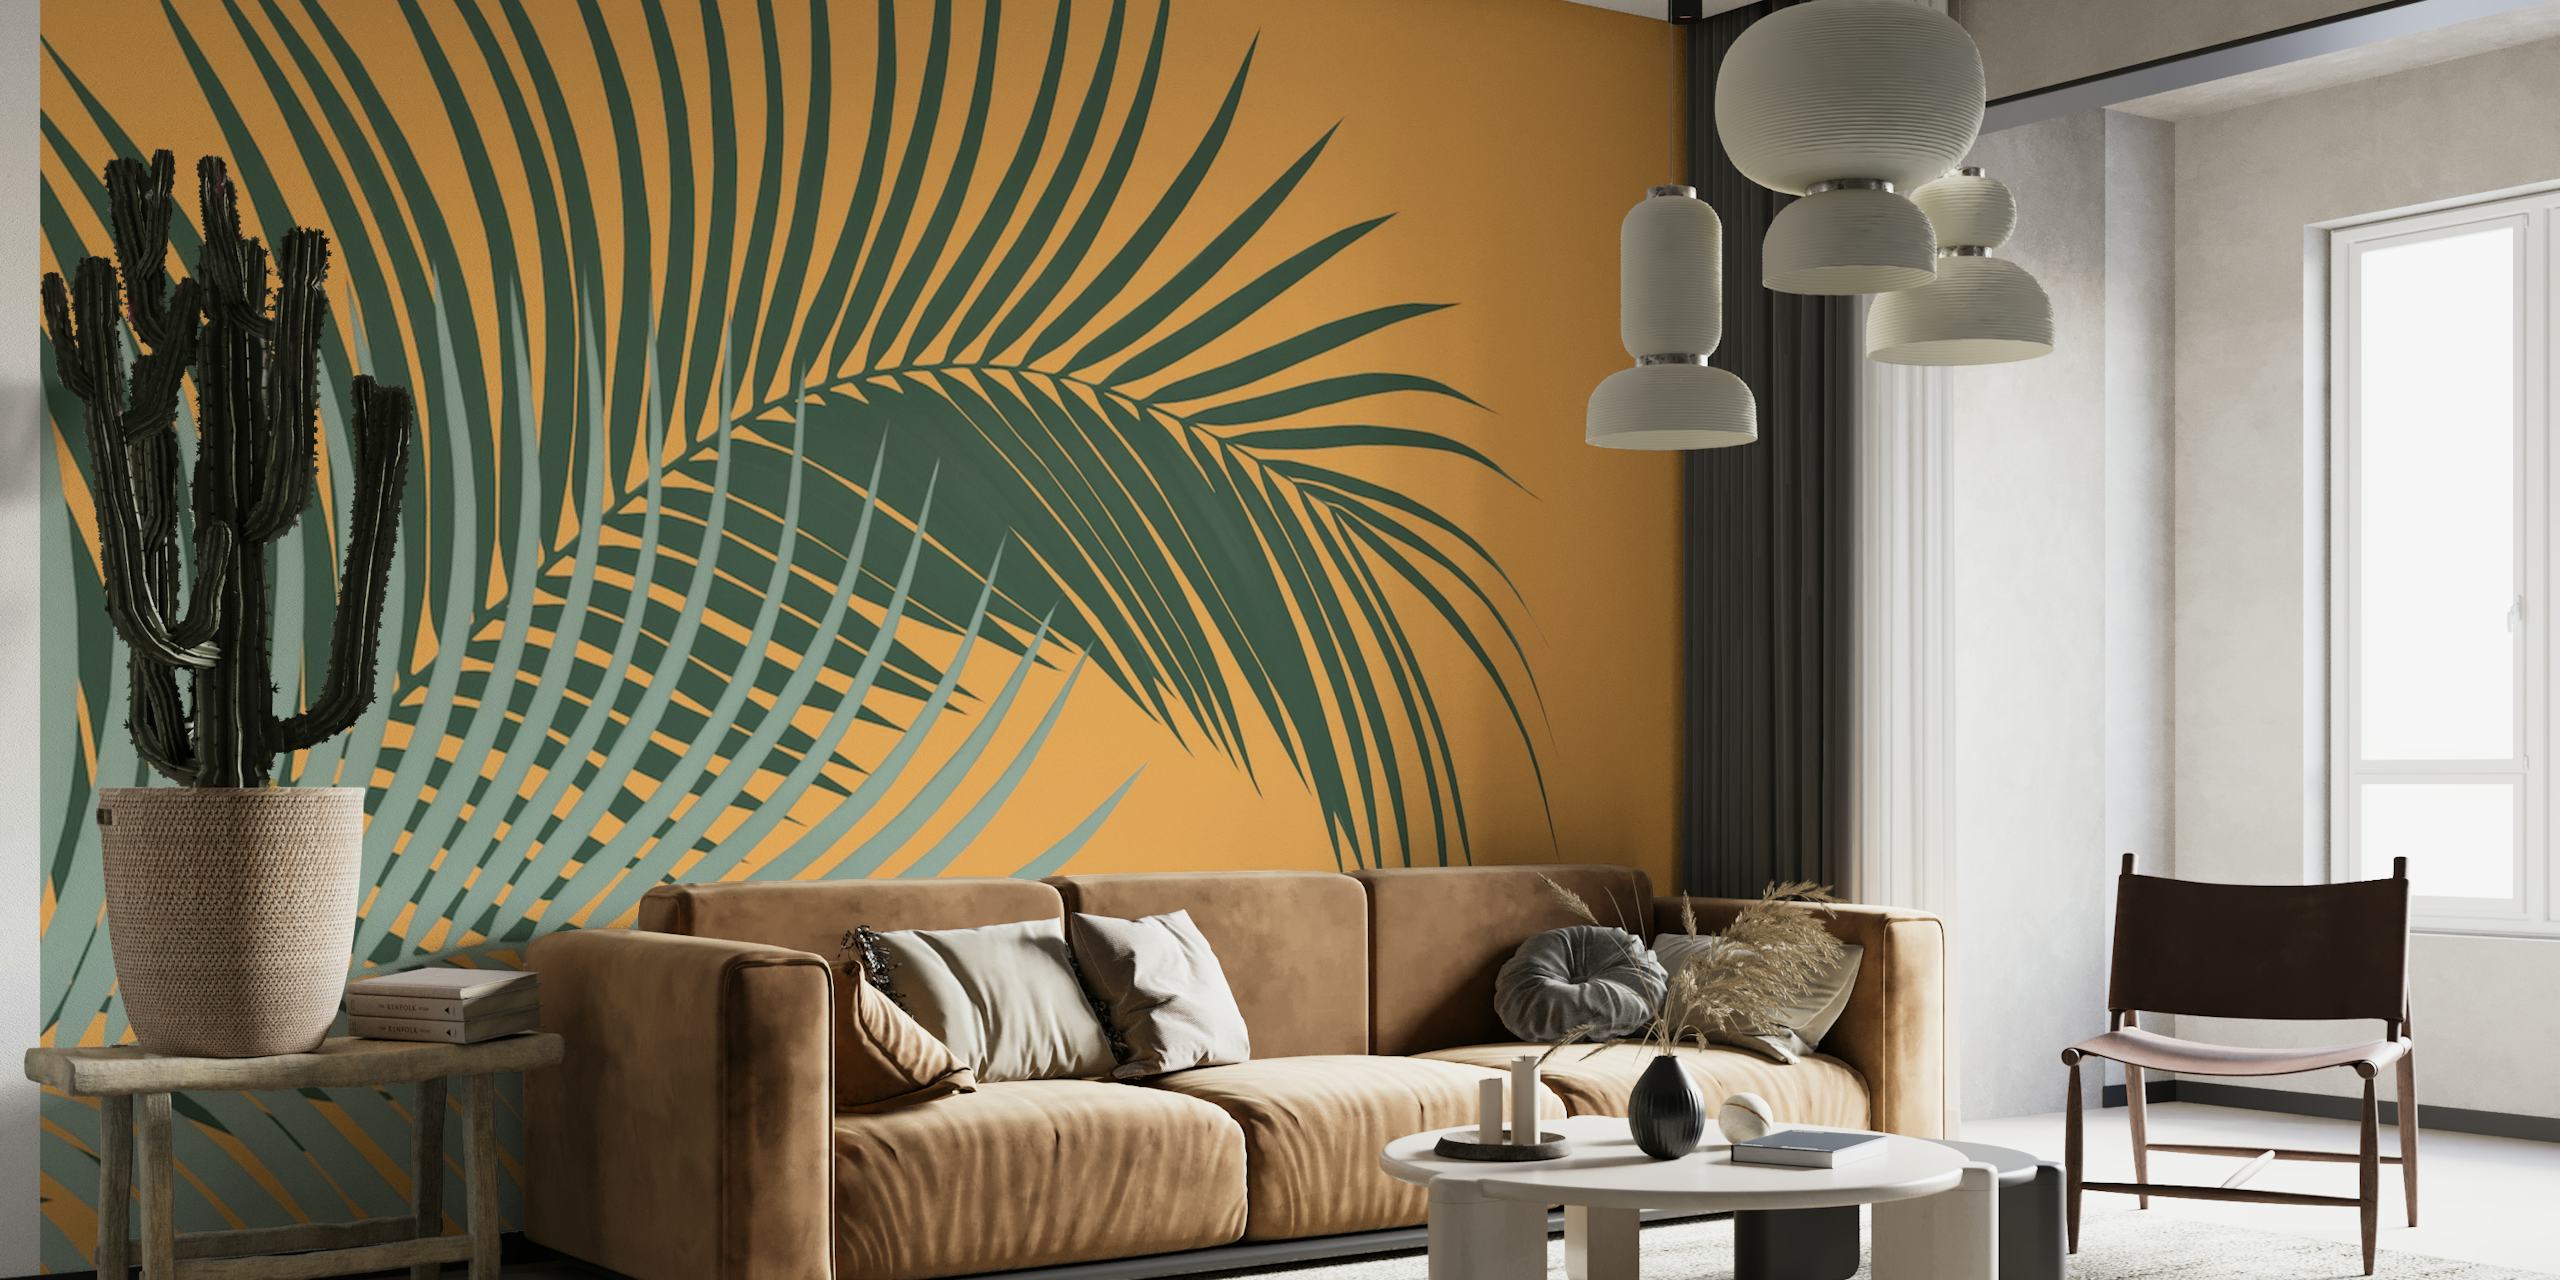 Un mural con hojas de palmera verdes sobre un fondo naranja.